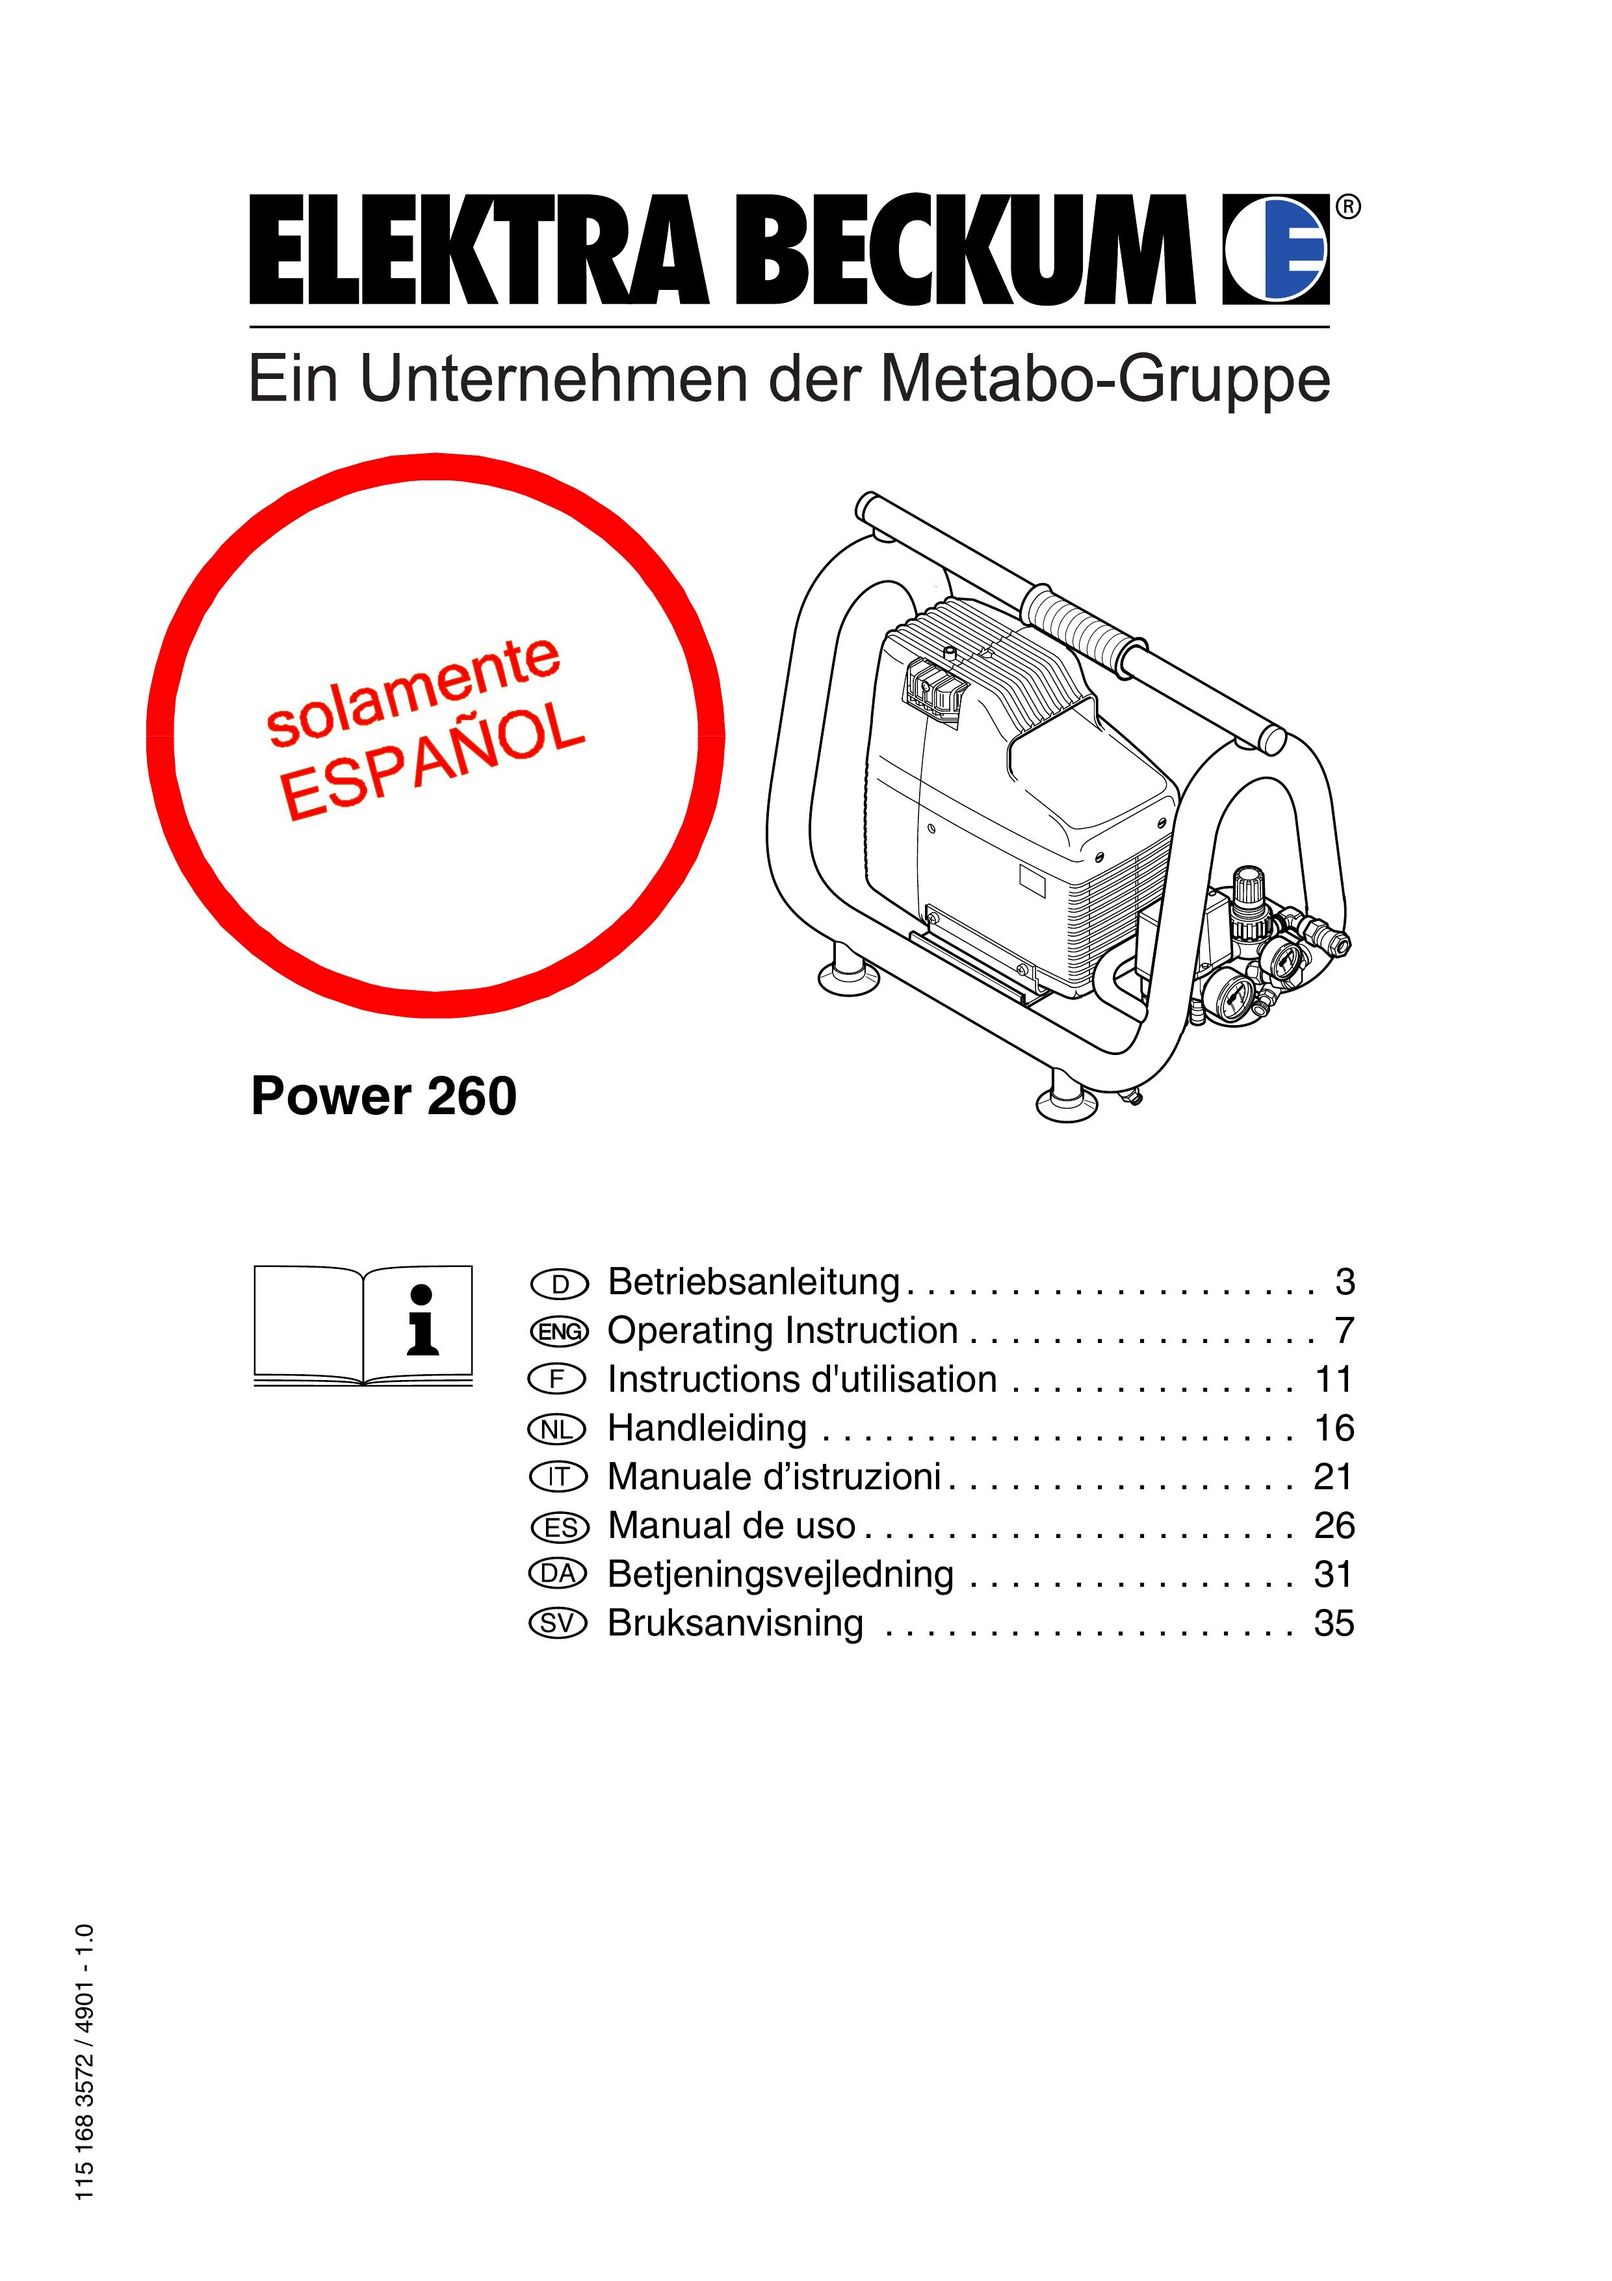 Elektra Beckum Power 260 Air Compressor User Manual